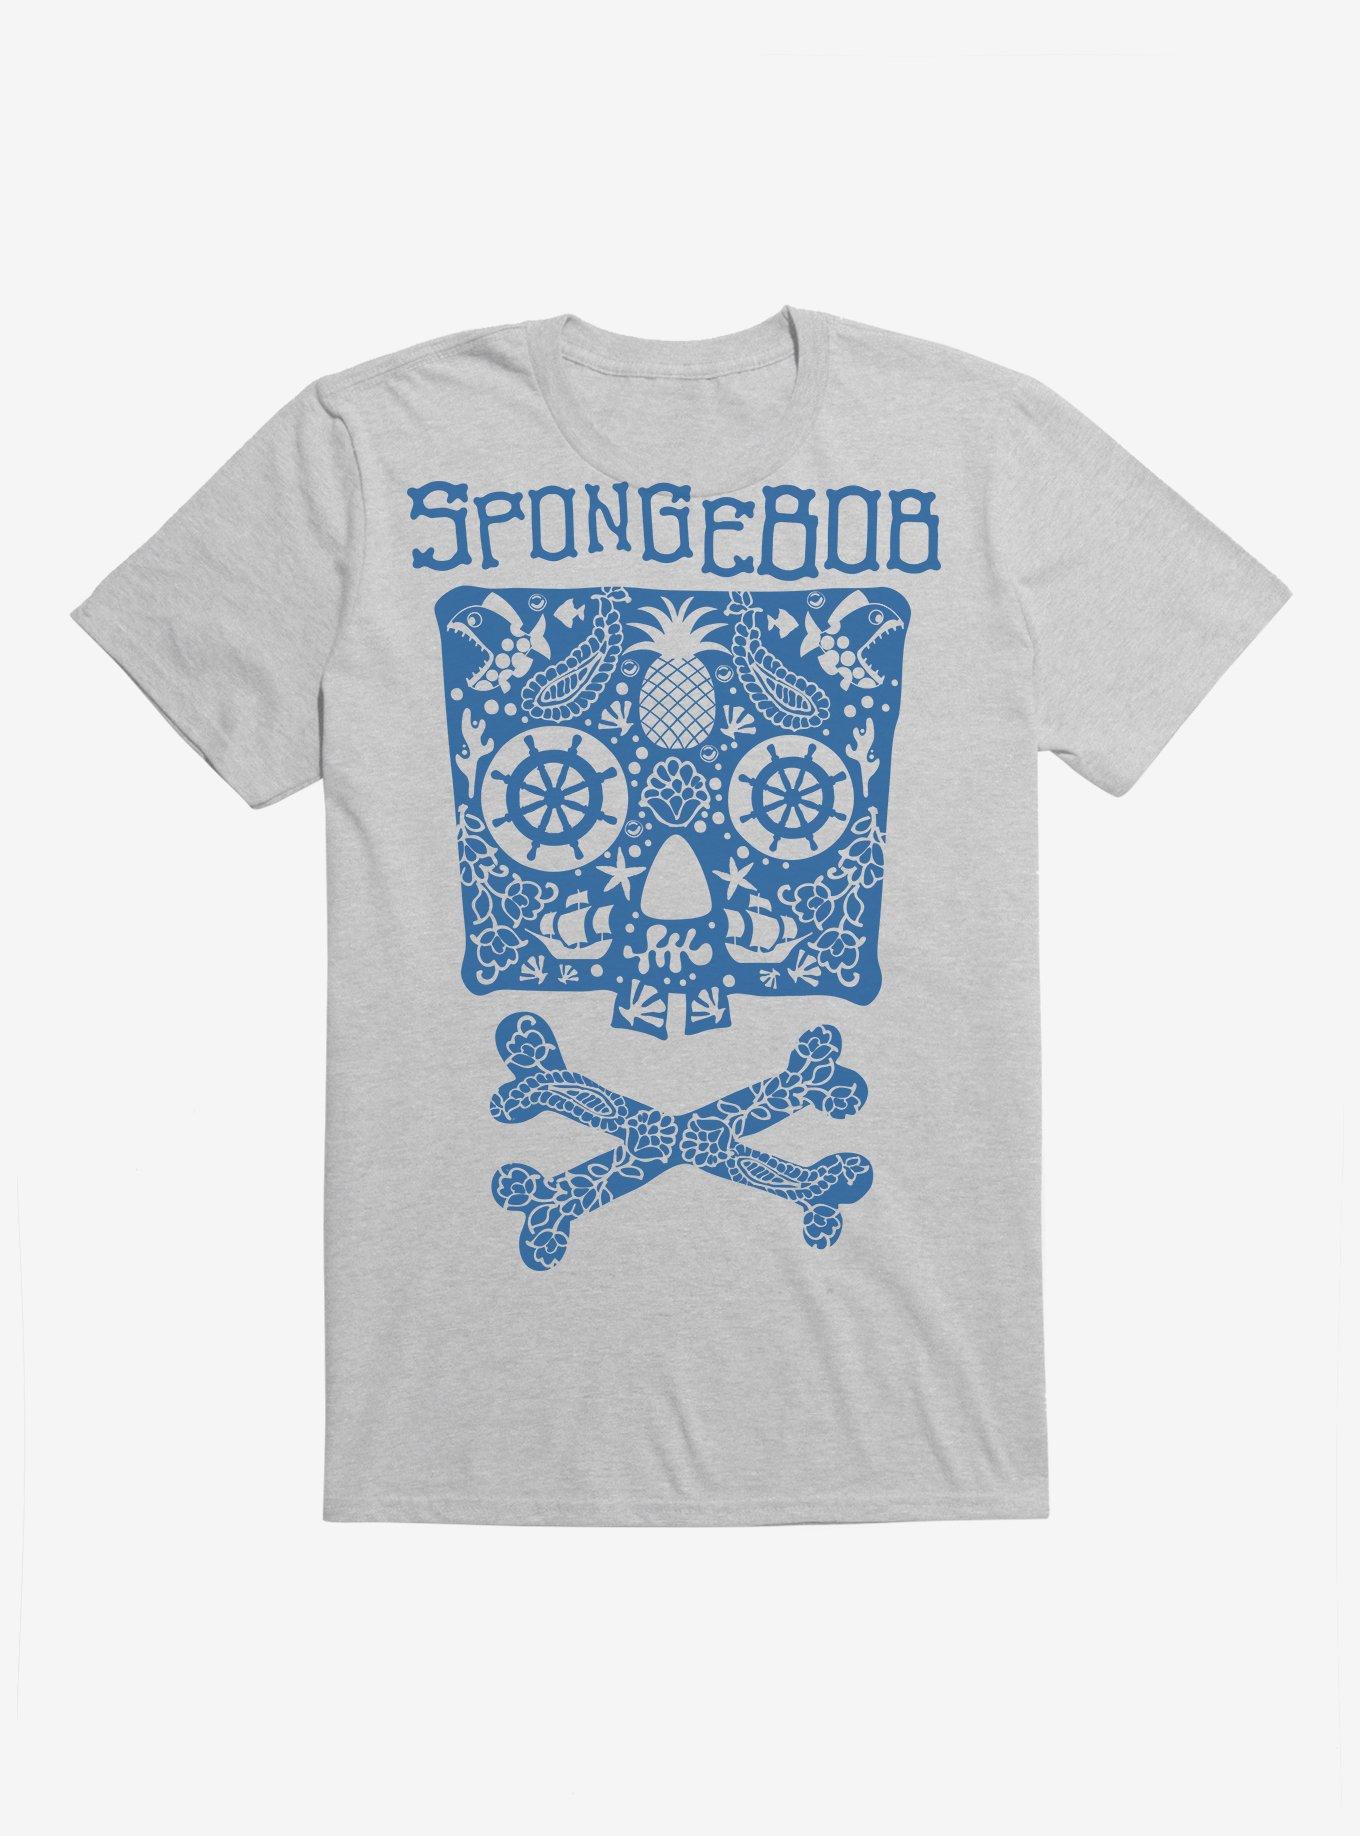 SpongeBob SquarePants Skulls And Bones SpongeBob T-Shirt, , hi-res